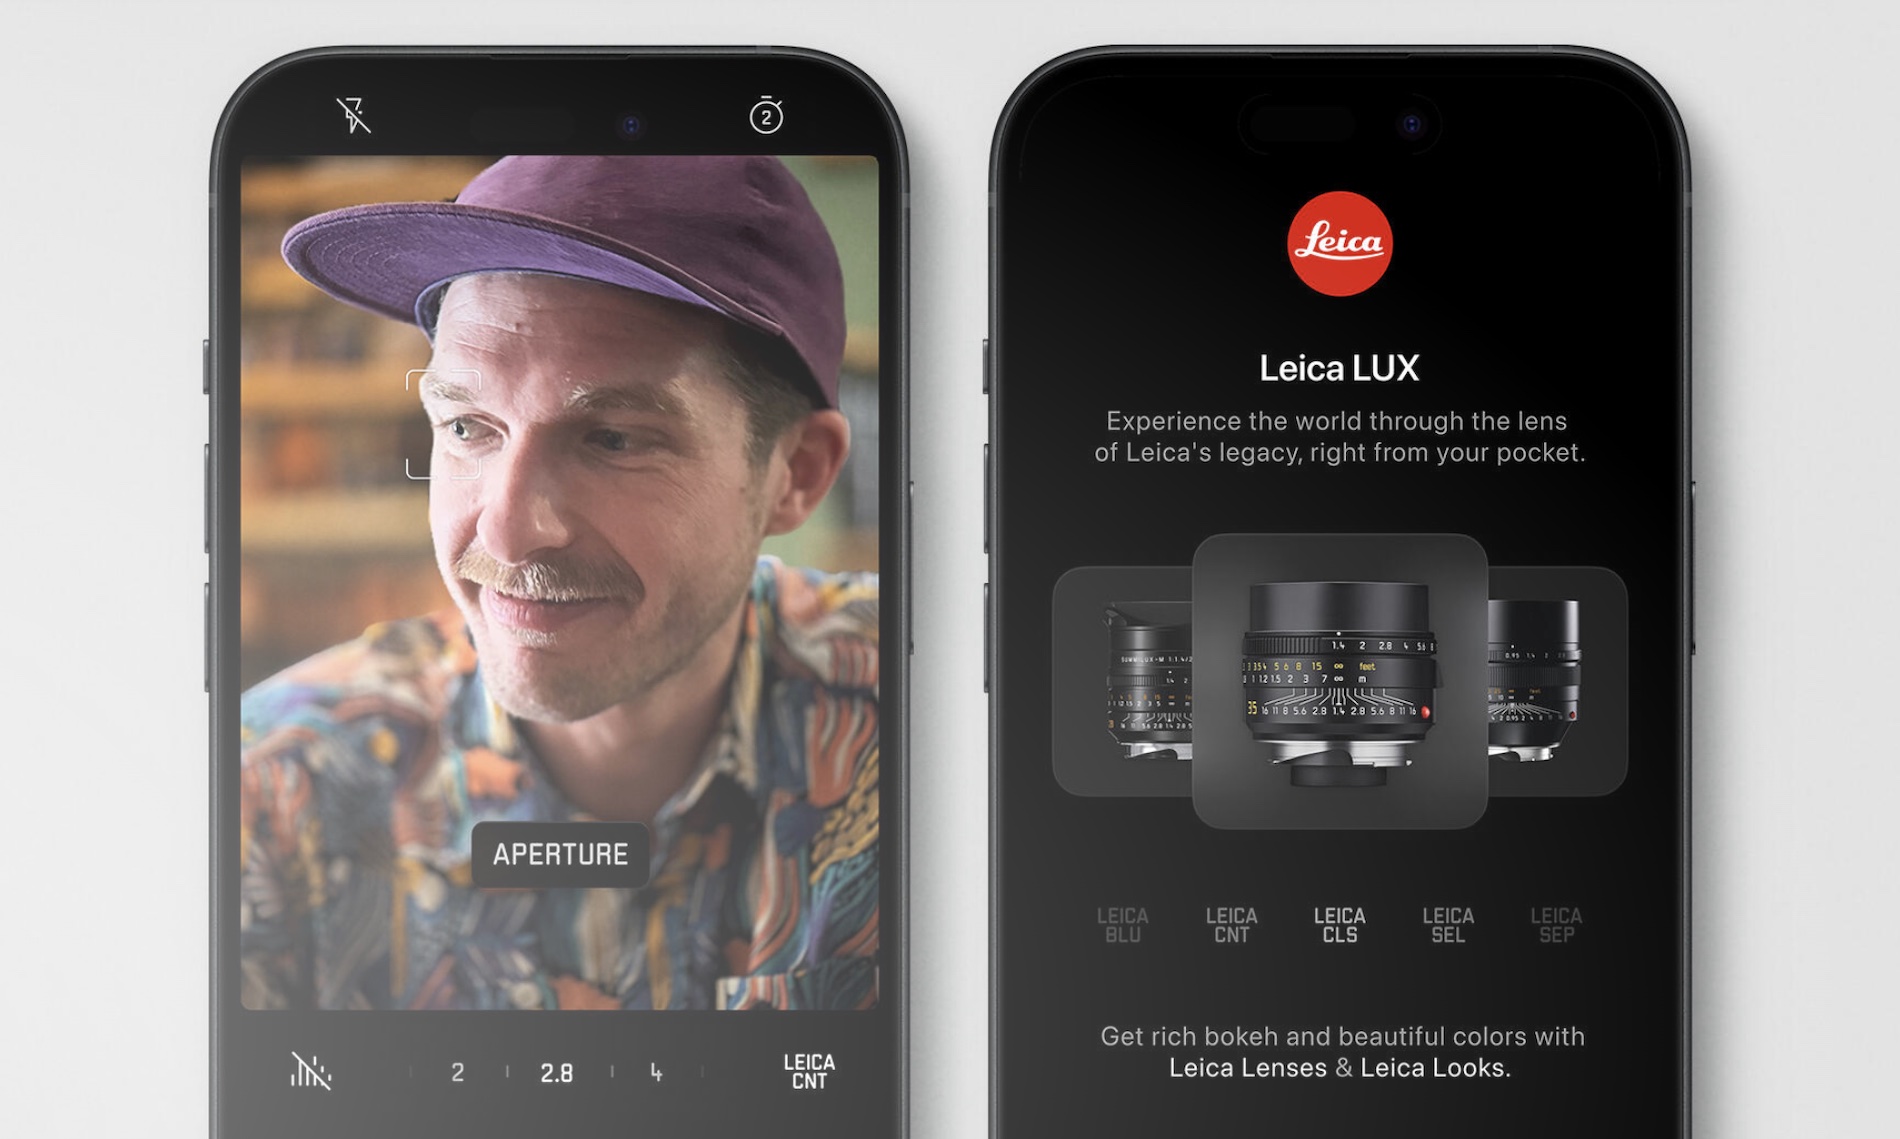 La aplicación Leica LUX para iPhone.